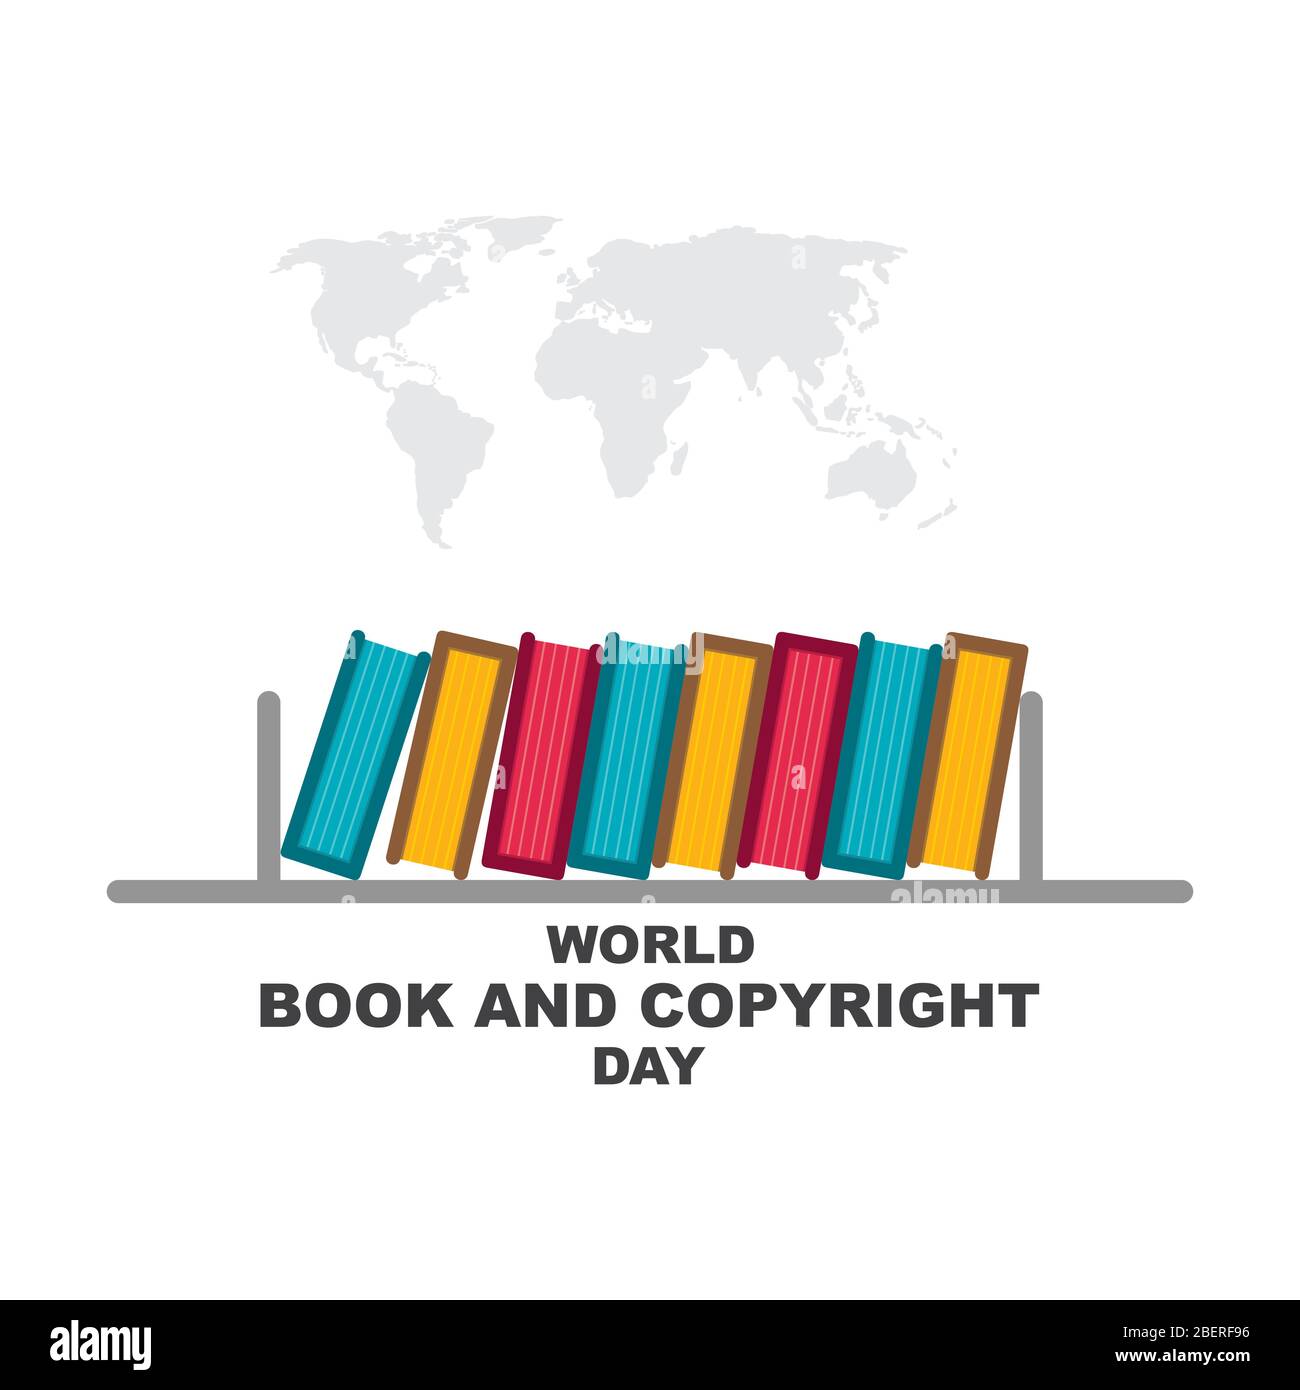 Illustration vectorielle du livre mondial et de la journée du copyright. Illustration plate de la journée mondiale du livre avec des livres colorés organiser sur soi Illustration de Vecteur